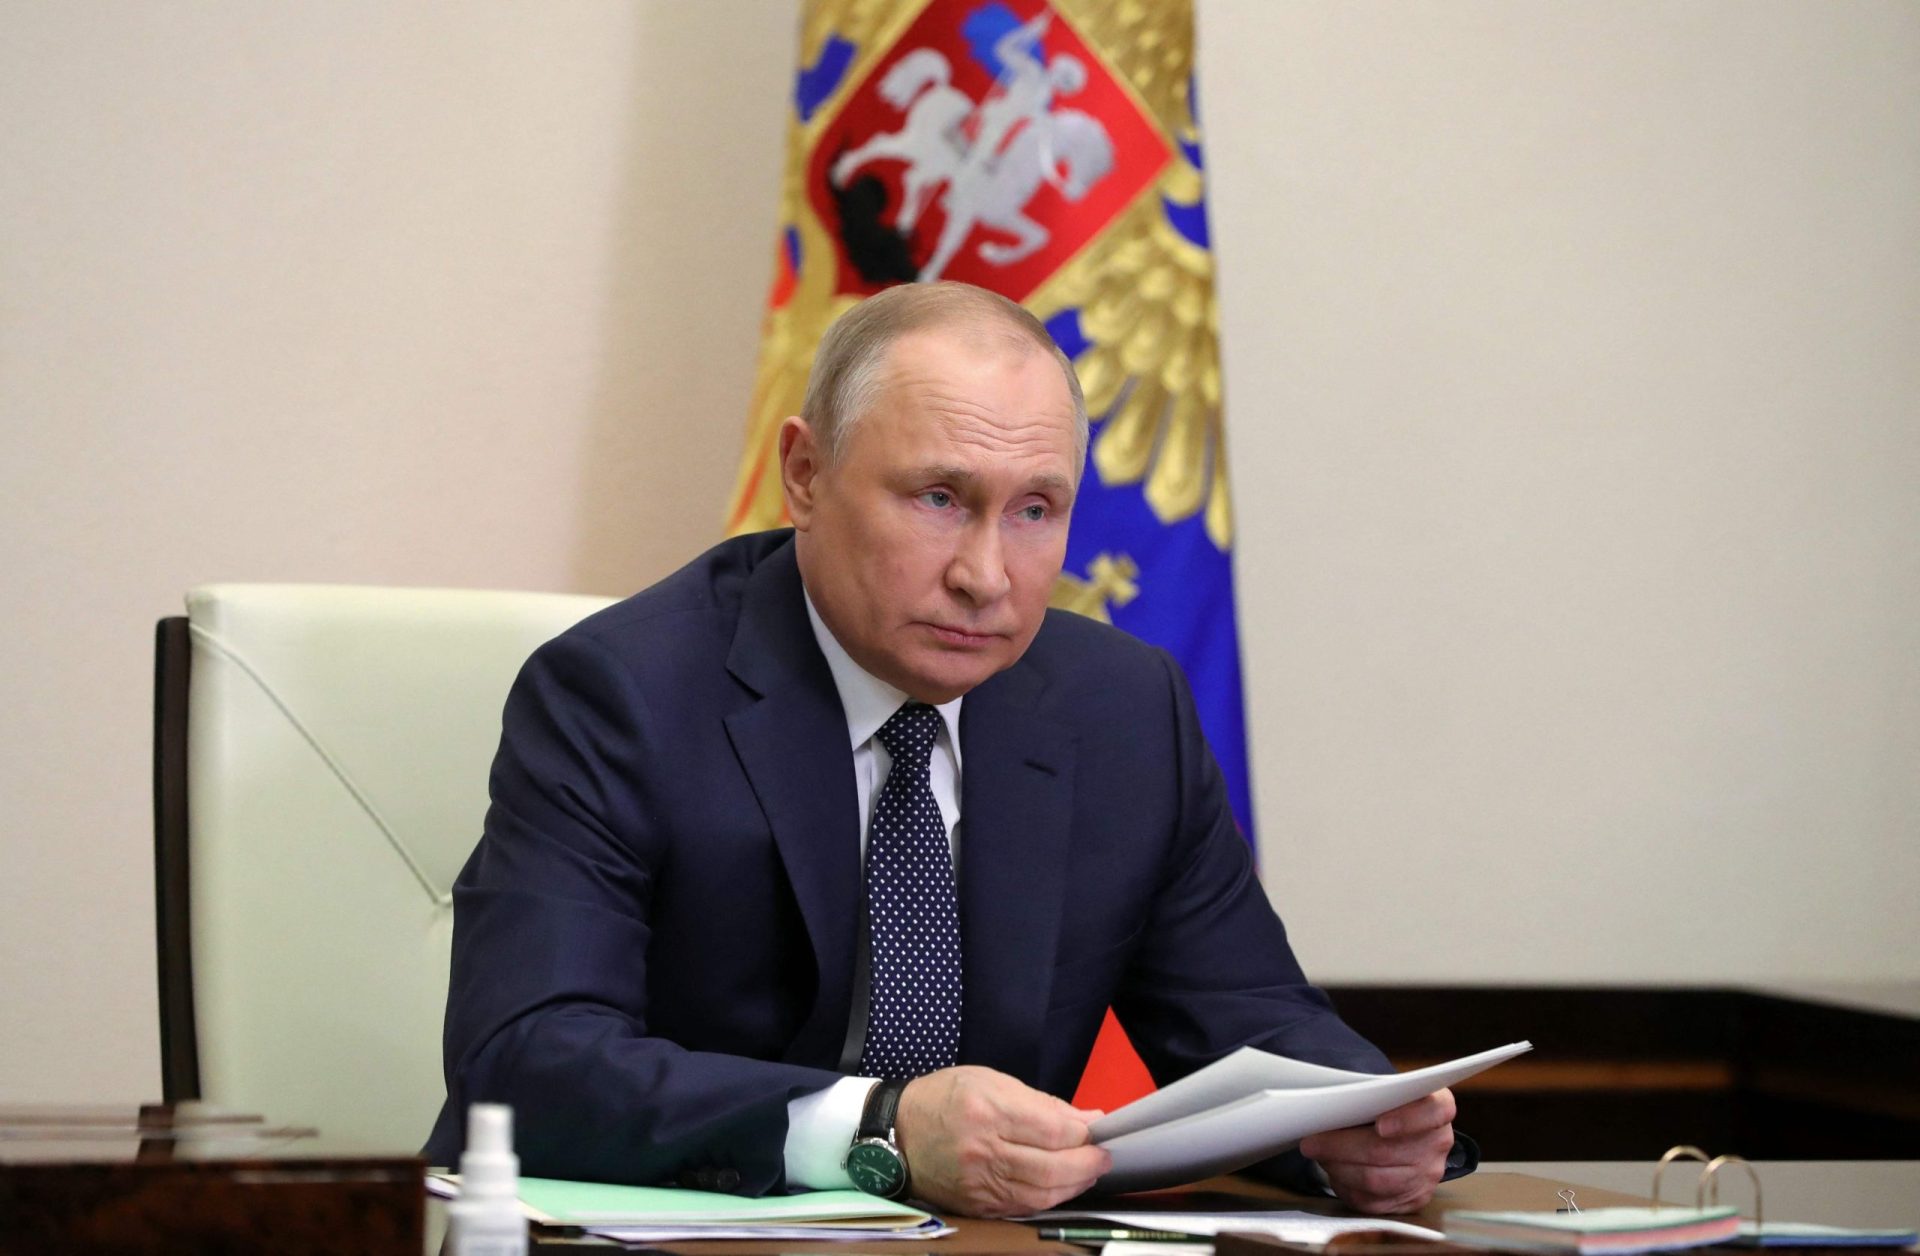 Putin acusa Ocidente de querer saquear Rússia